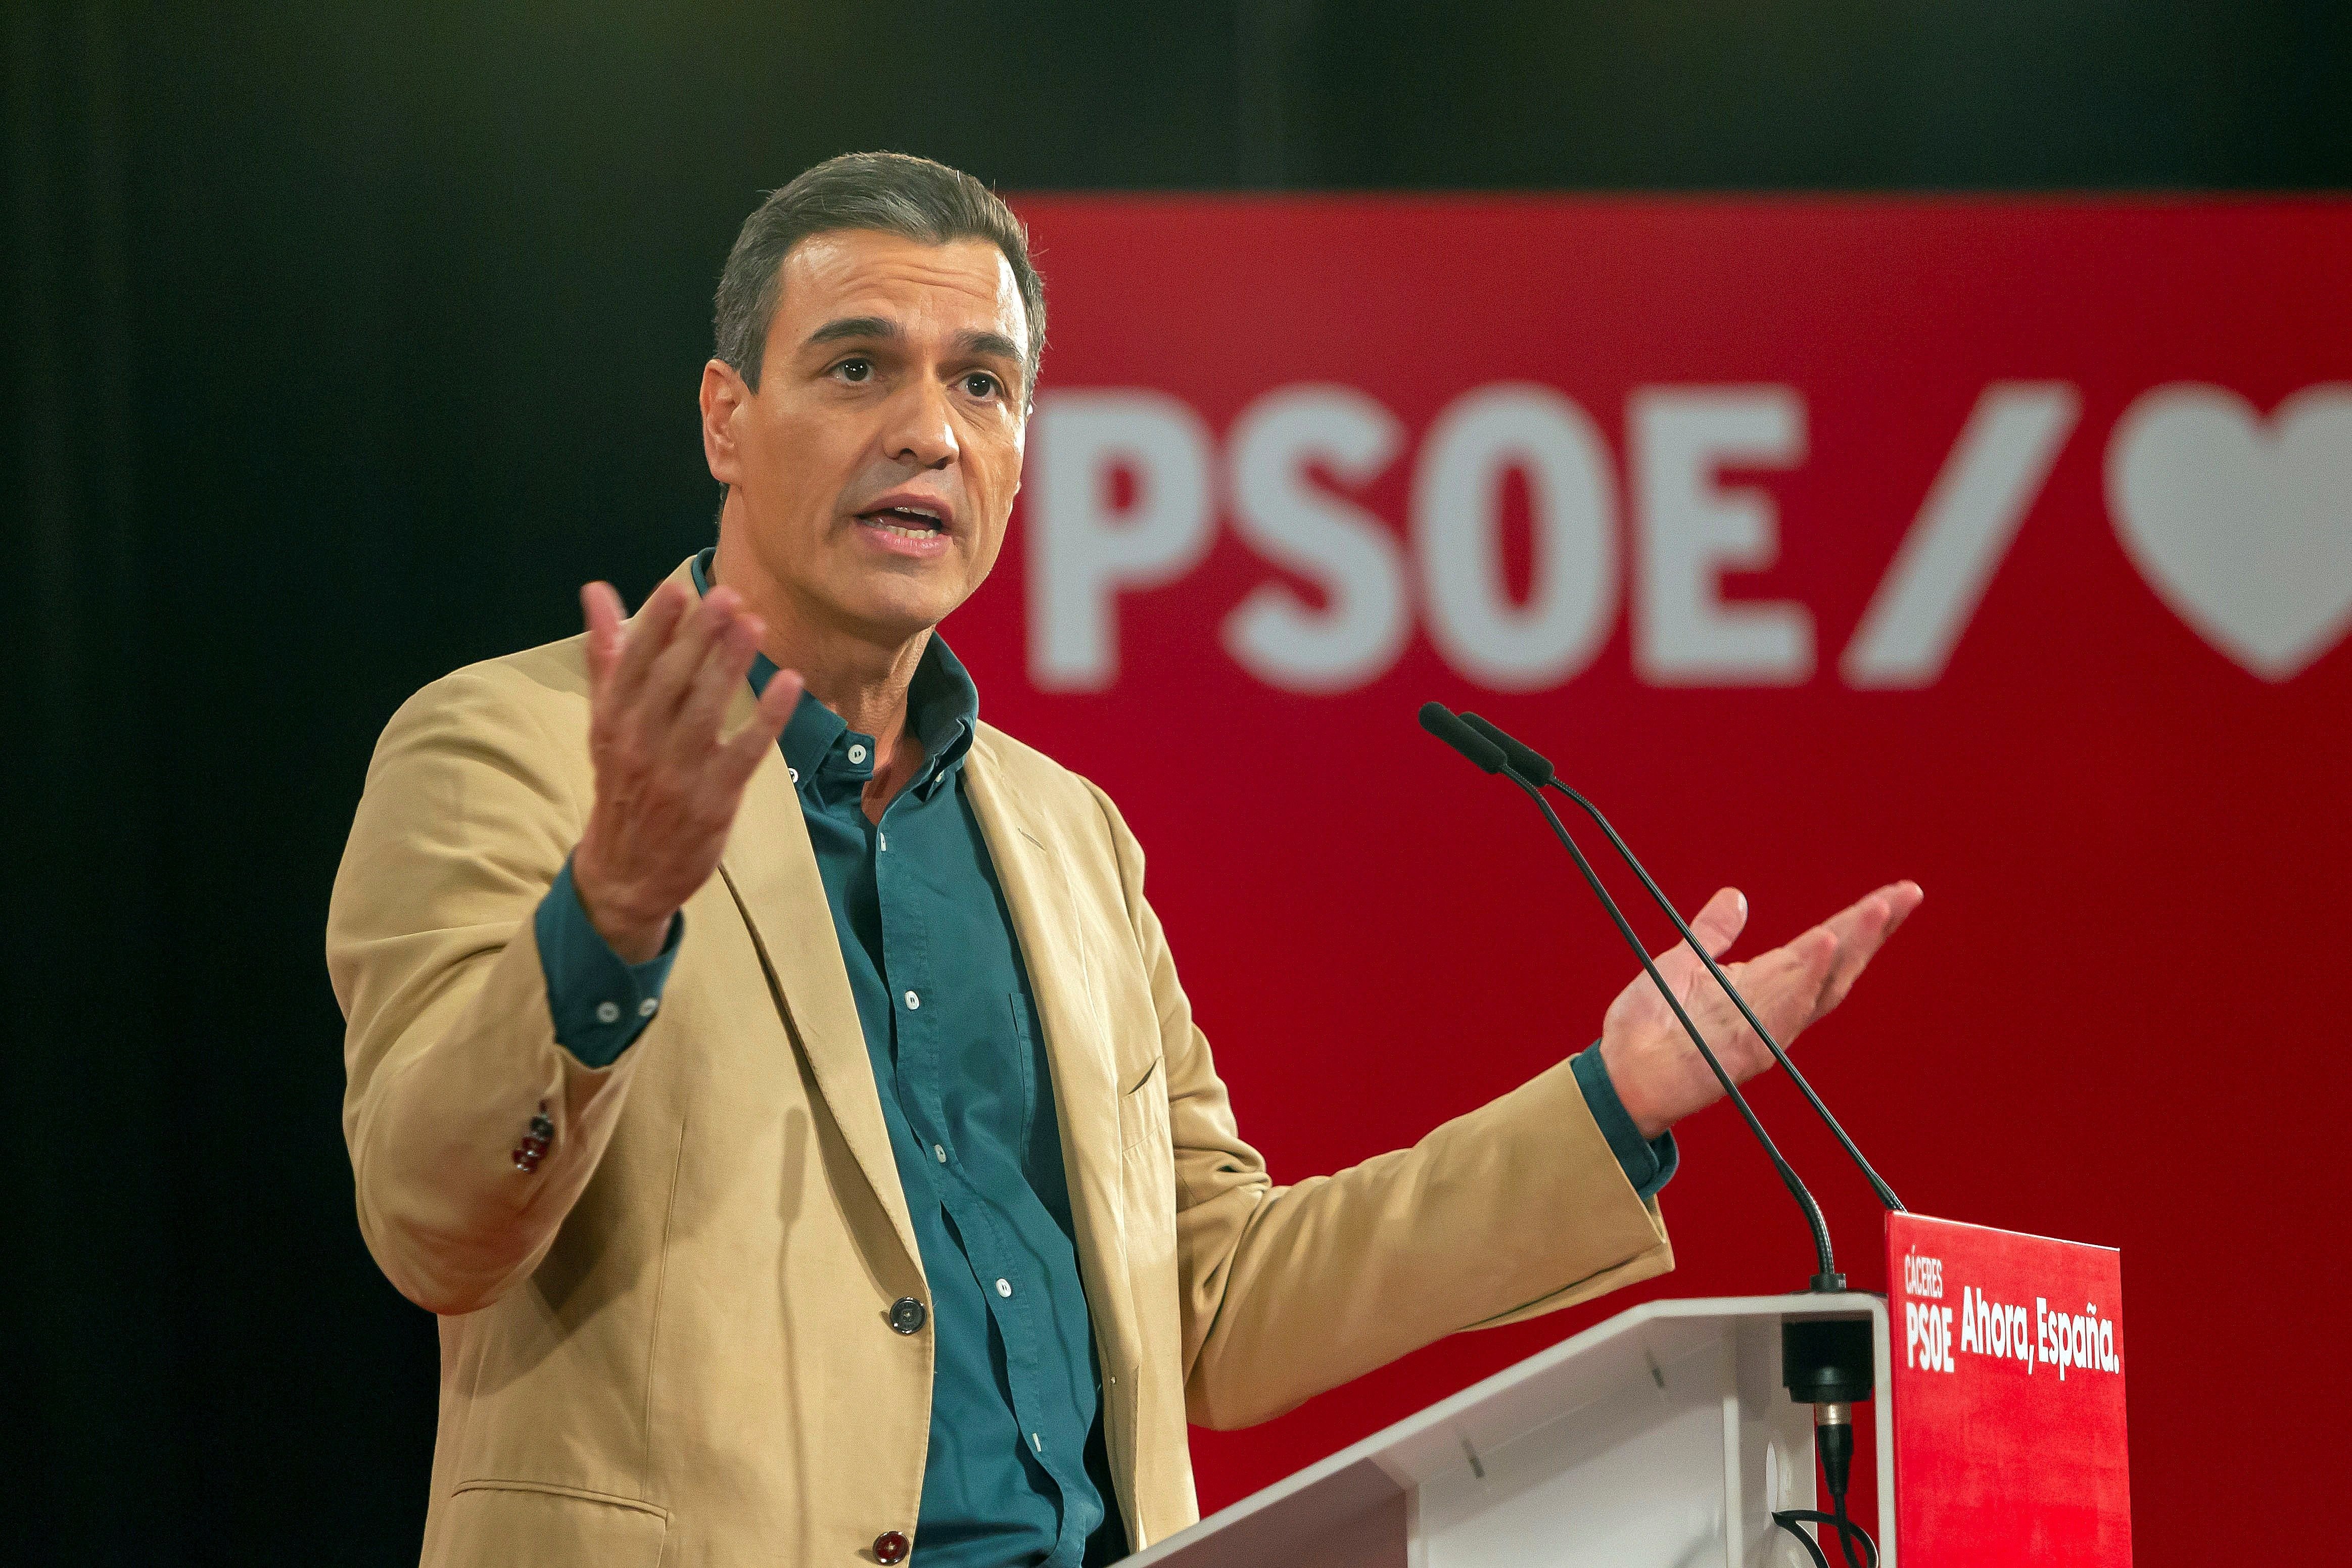 La entrada de Errejón no evitaría que el PSOE dependiera de los independentistas, según una encuesta